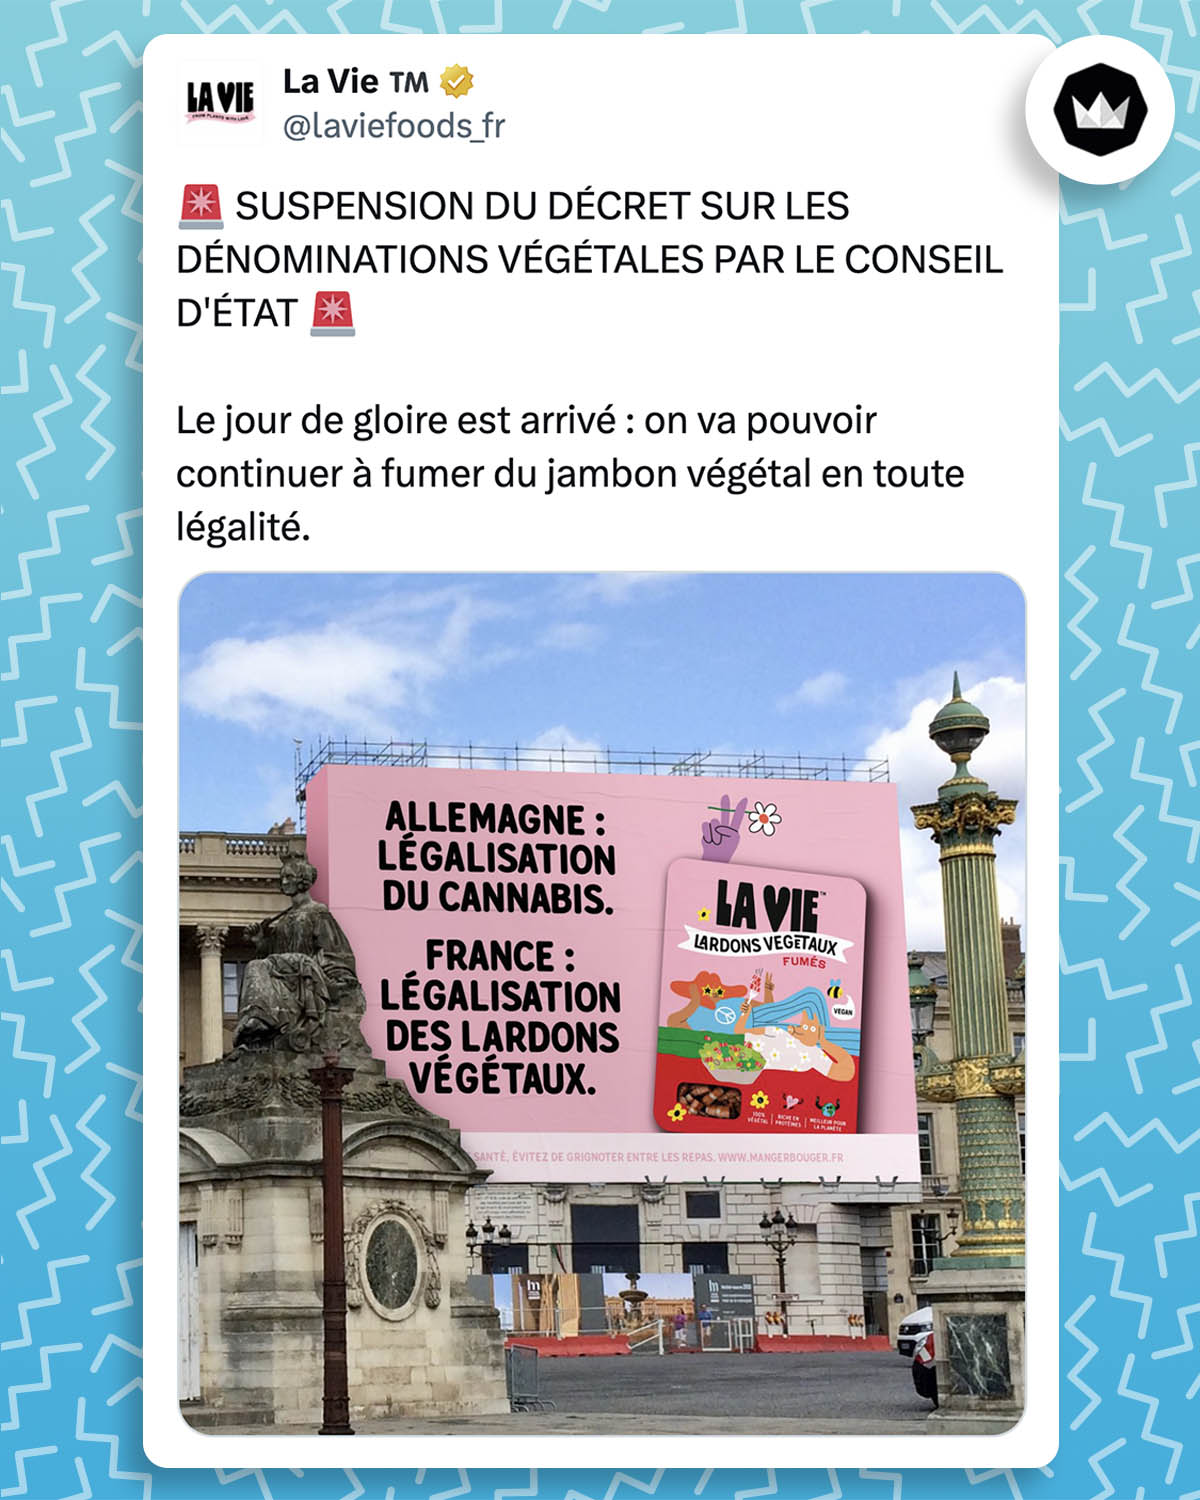 tweet de @laviefoods_fr :
"🚨 SUSPENSION DU DÉCRET SUR LES DÉNOMINATIONS VÉGÉTALES PAR LE CONSEIL D'ÉTAT 🚨

Le jour de gloire est arrivé : on va pouvoir continuer à fumer du jambon végétal en toute légalité.

#FOOH"

Une photo accompagne le tweet, un montage d'une affiche publicitaire pour "La Vie" qui indique :
"Allemagne : légalisation du cannabis
France : légalisation des lardons végétaux"